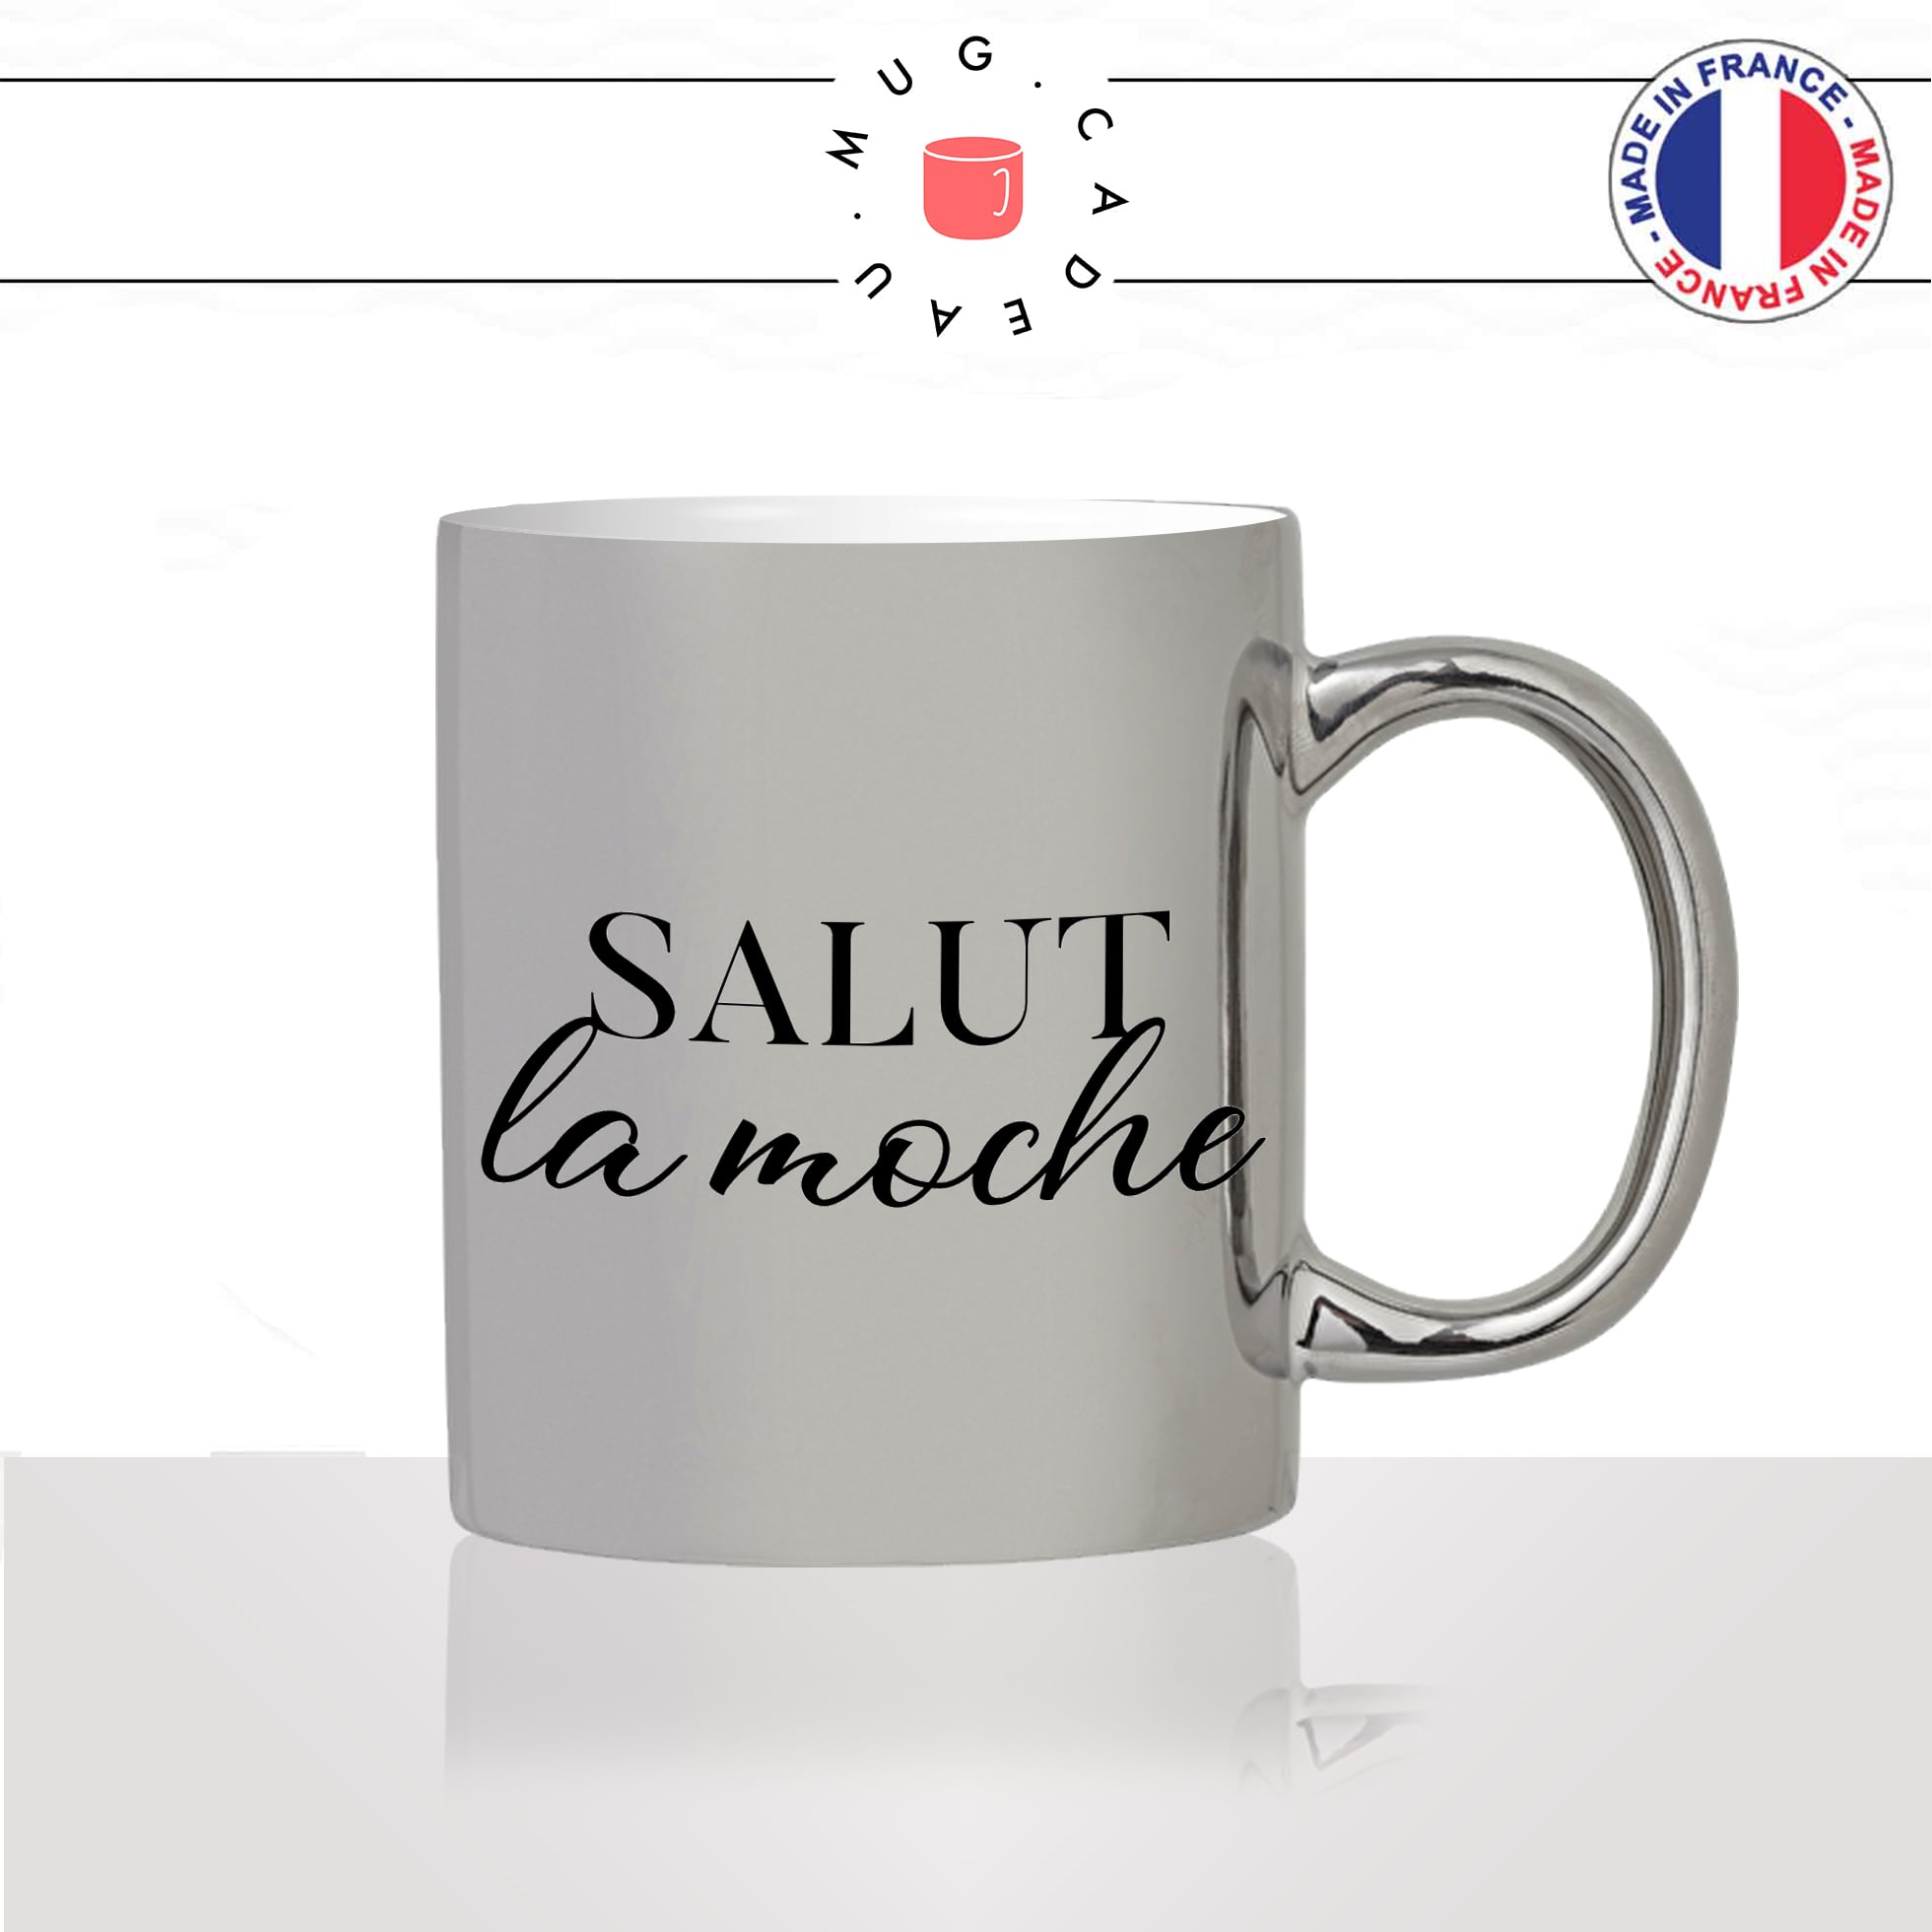 mug-tasse-argent-argenté-silver-salut-la-moche-femme-copine-collegue-couple-célibataire-humour-idée-cadeau-fun-cool-café-thé-original2-min